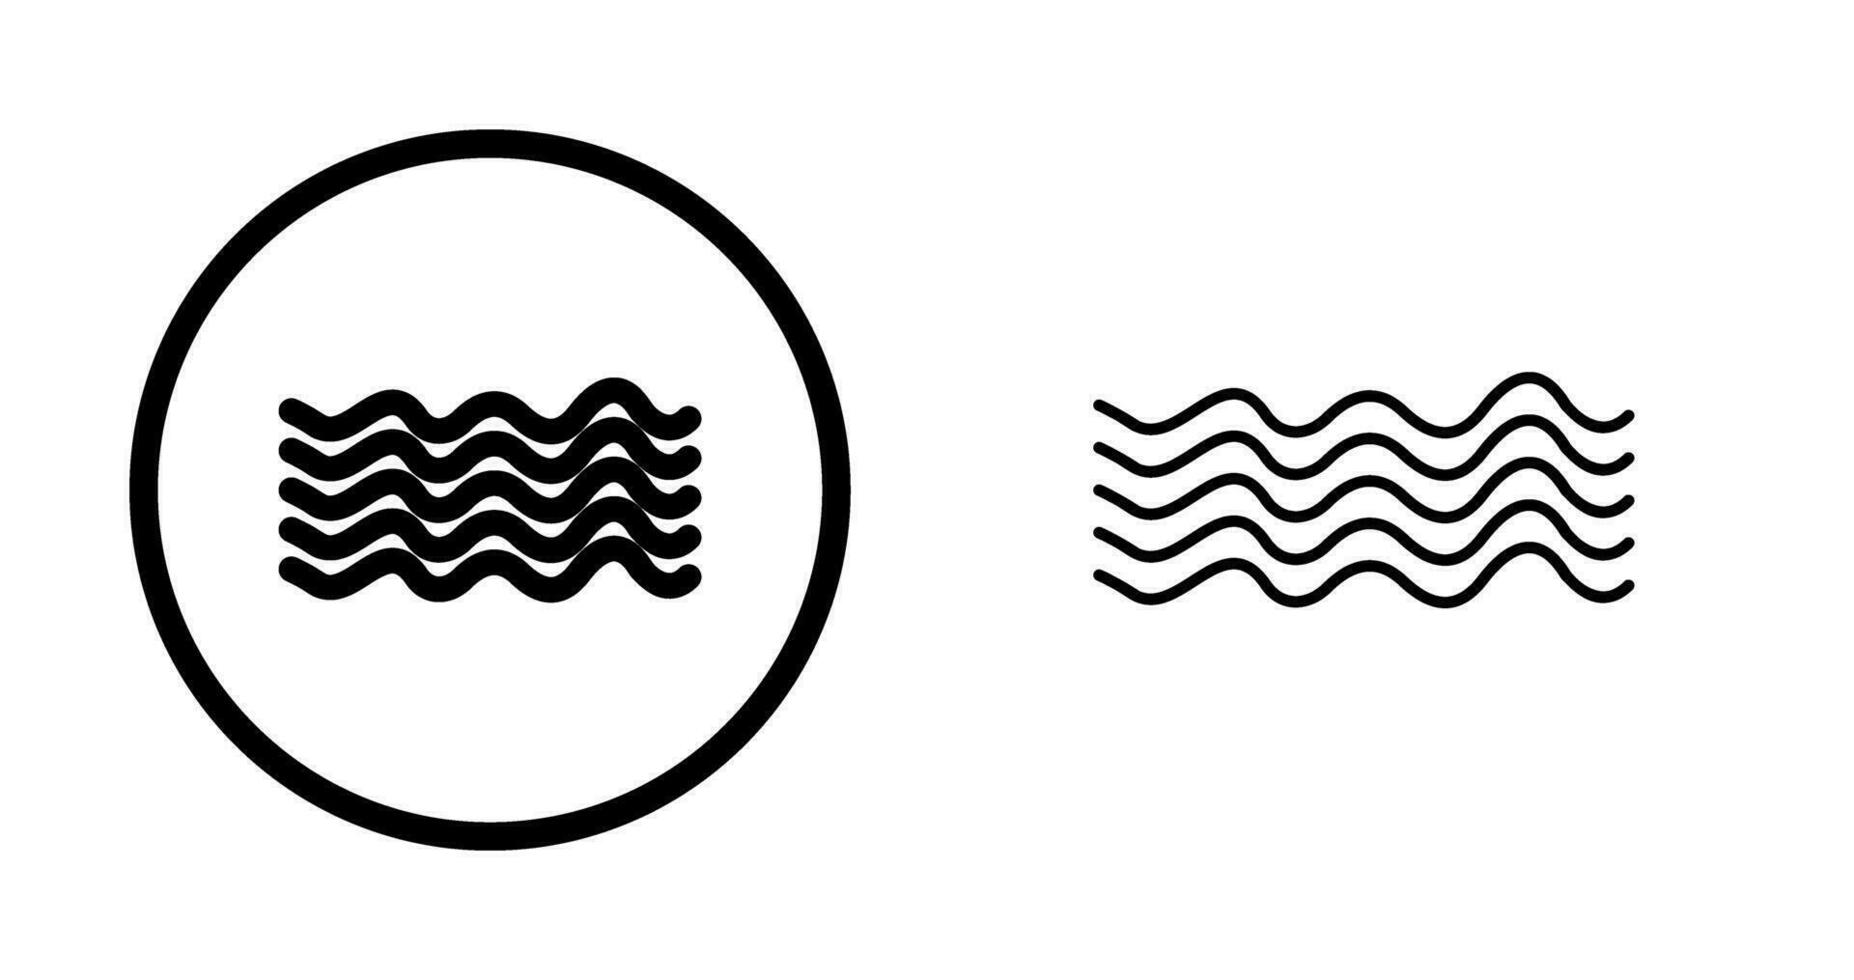 Vektorsymbol für magnetische Wellen vektor